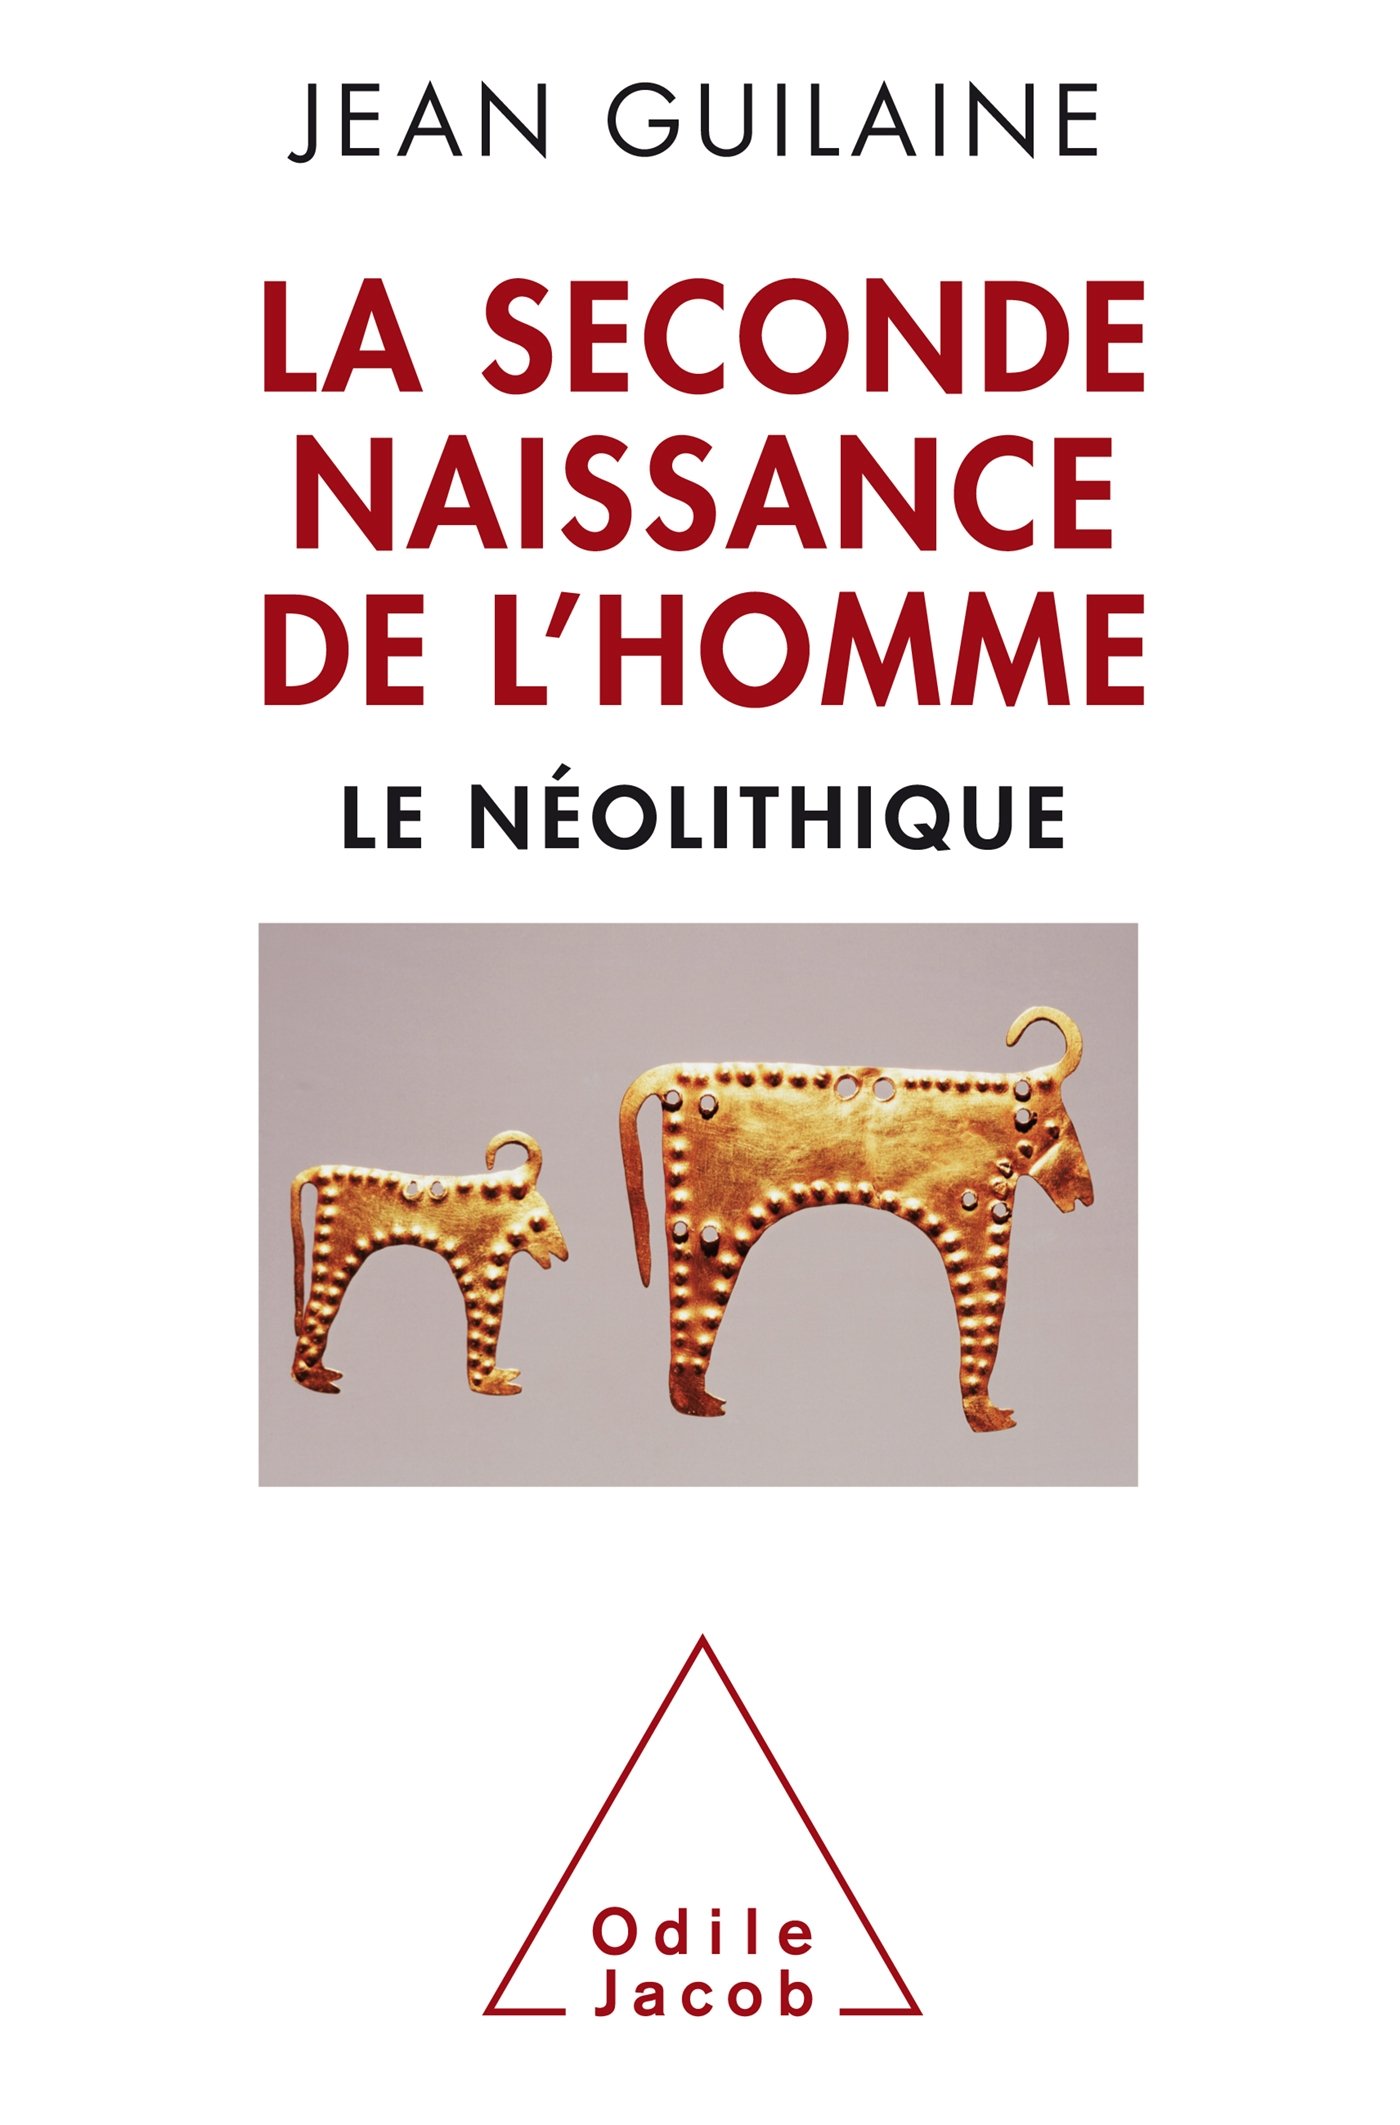 La Seconde Naissance de l'Homme. Le Néolithique, 2015, 208 p.